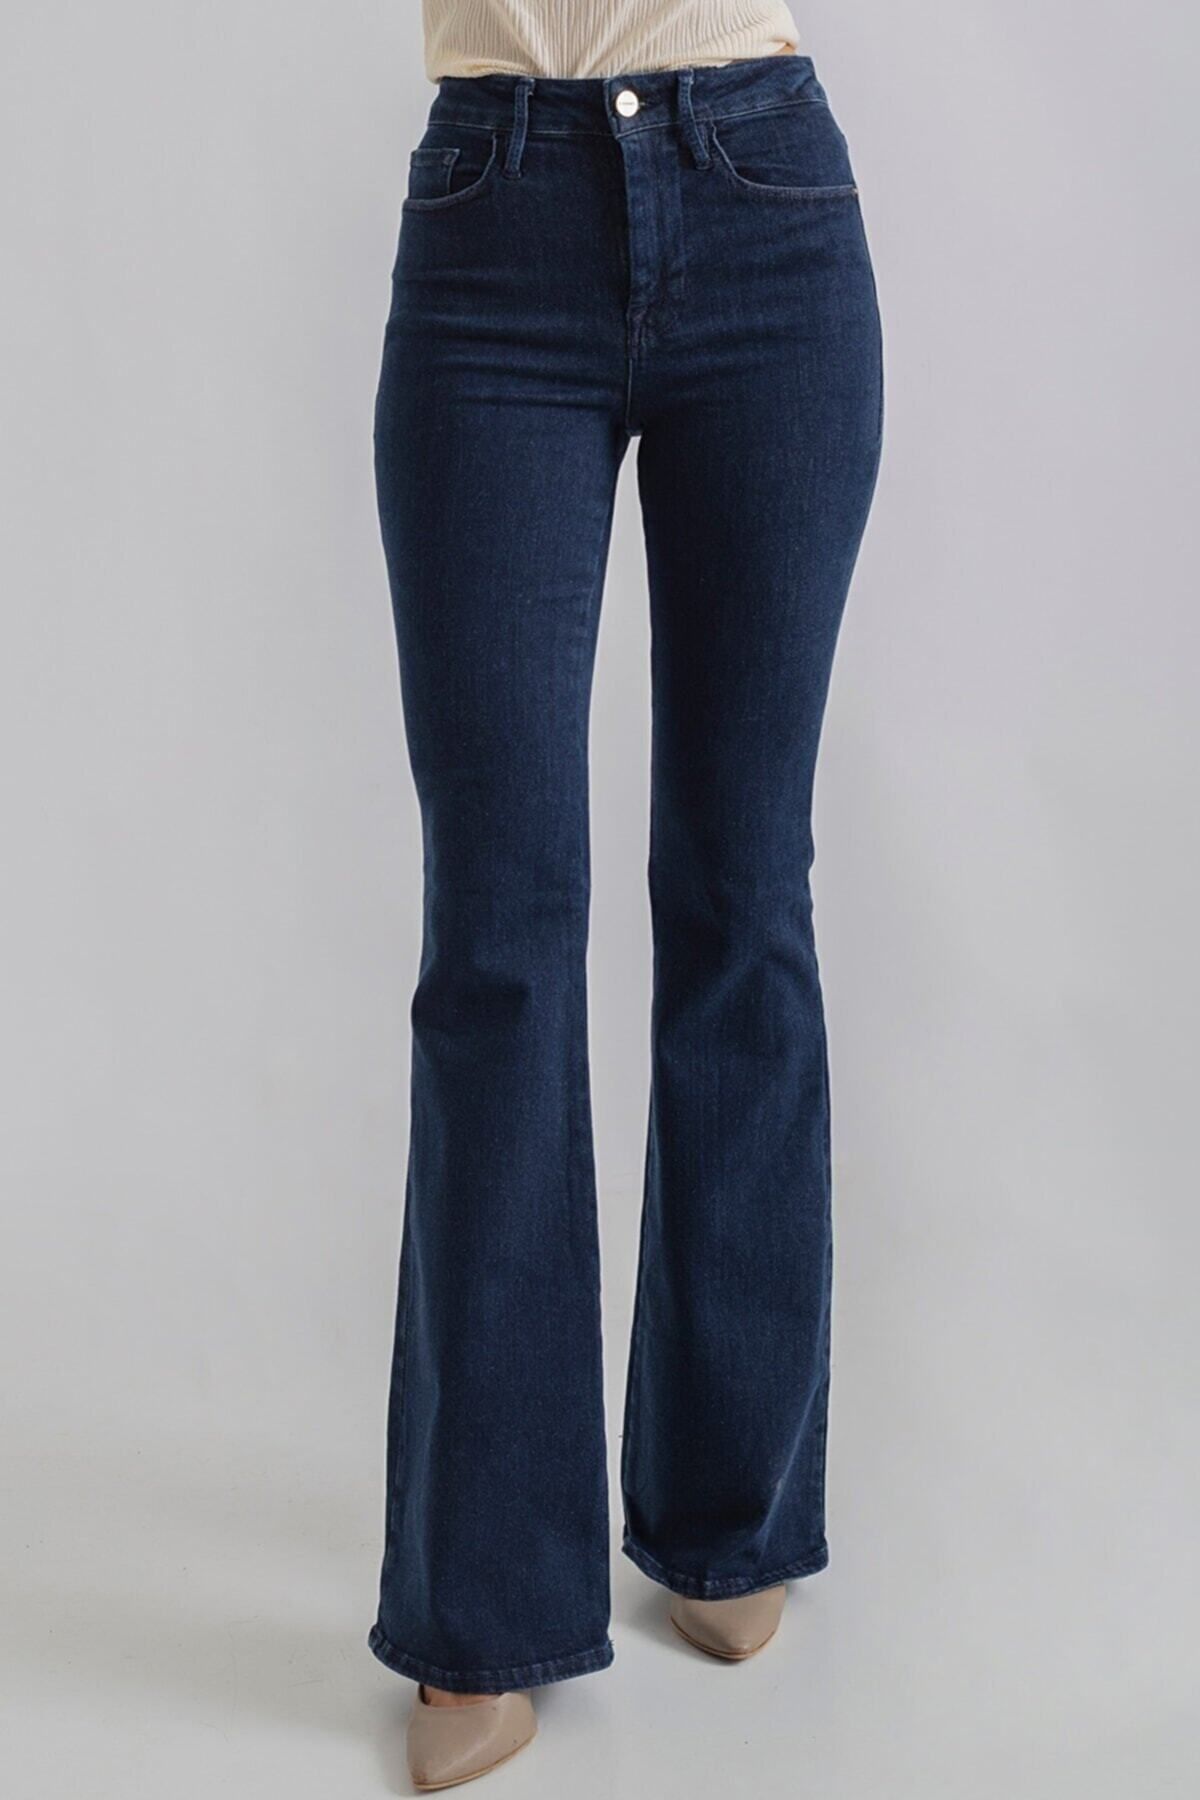 TRENDNATUREL Ispanyol Renk Solmaz Likralı Yüksek Bel Koyu Mavi Ispanyol Jeans Pantolon-beden Tablomuz Mevcuttur